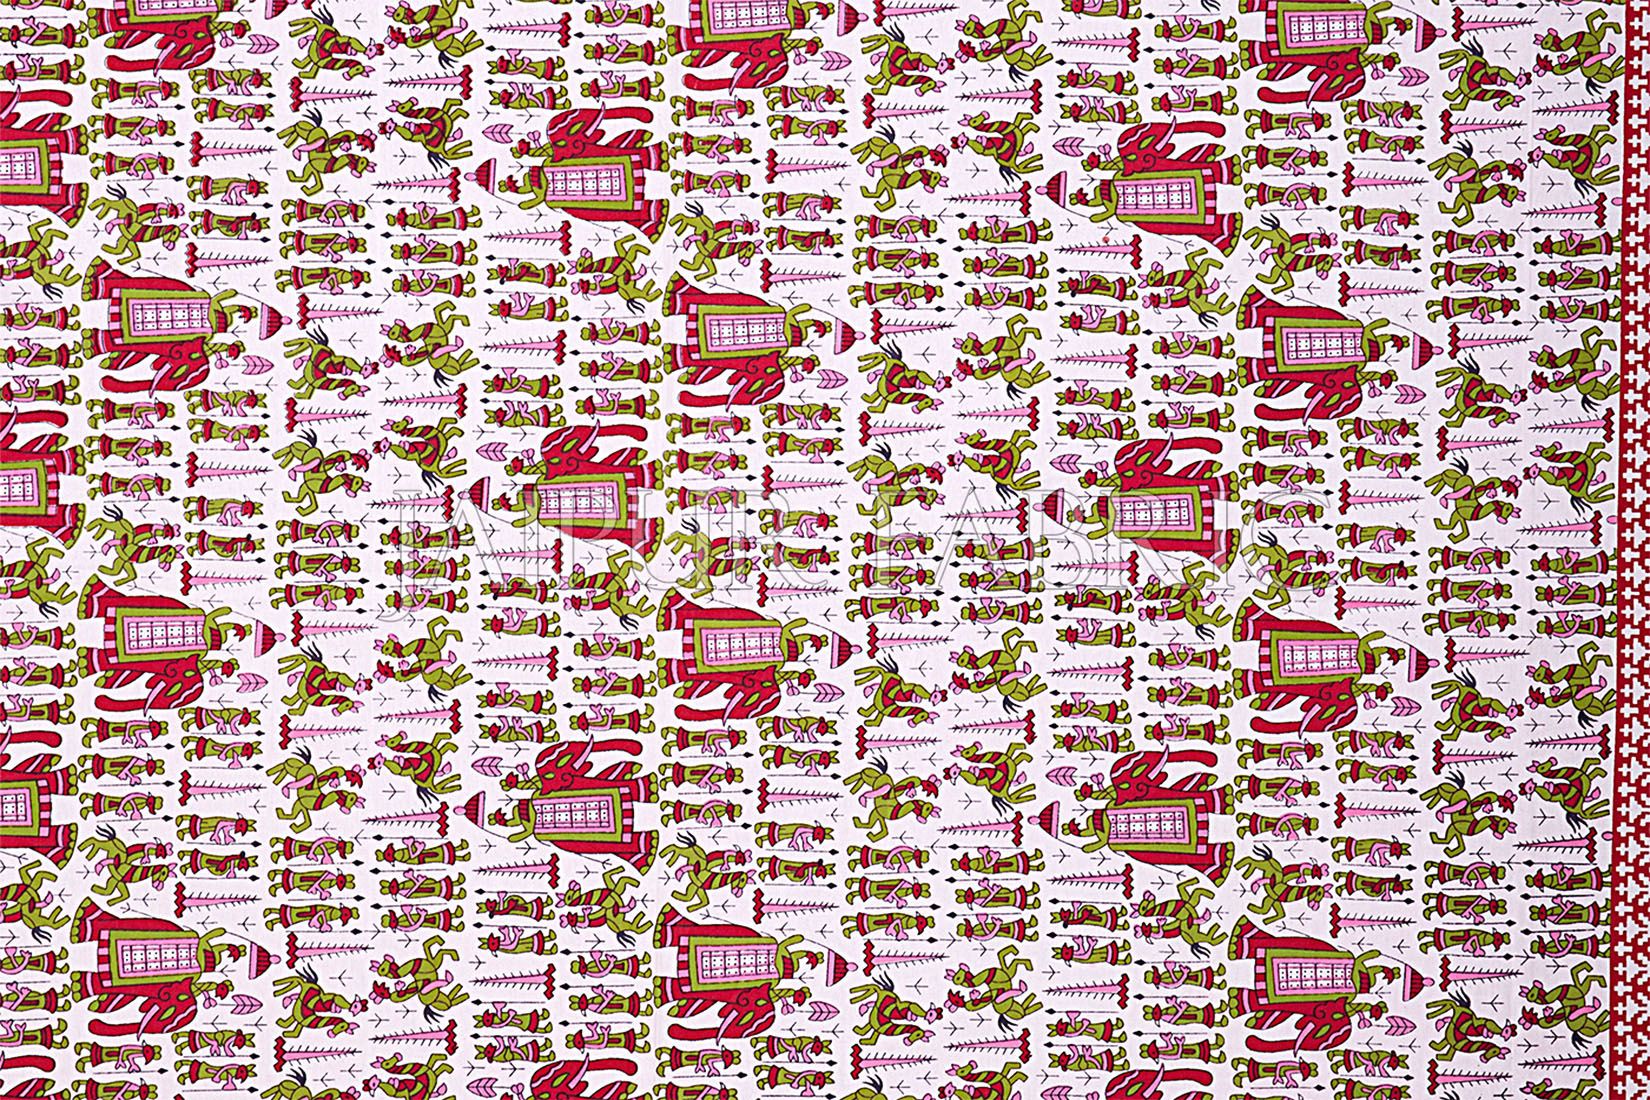 Pastel Pink Rajasthani Wedding Printed Cotton Double Bed Sheet